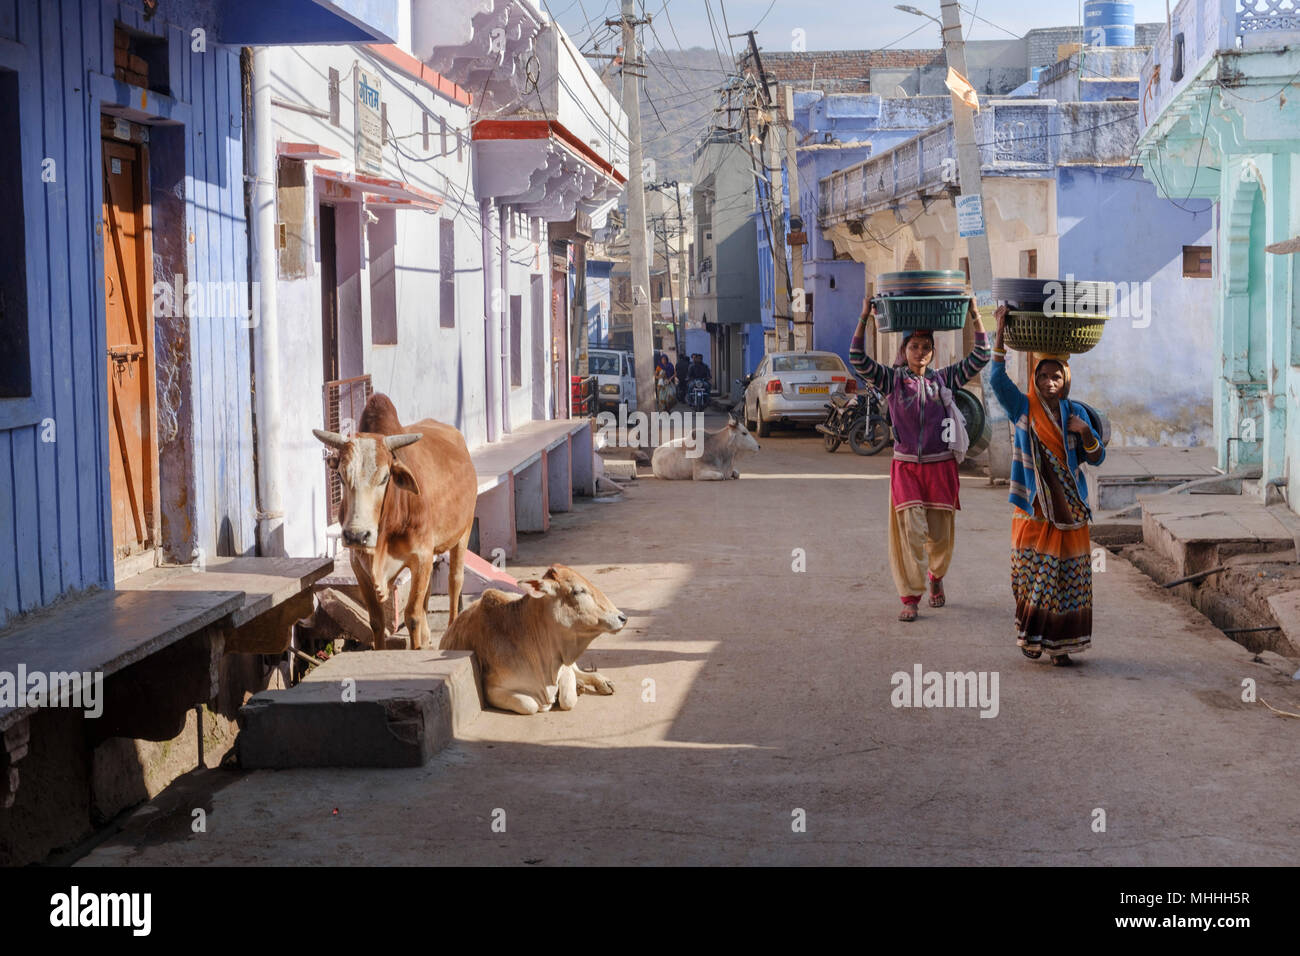 Deux femmes avec des paniers en plastique sur la tête marche dans la rue passé vaches se détendre au soleil. Bundi, Rajasthan. L'Inde Banque D'Images